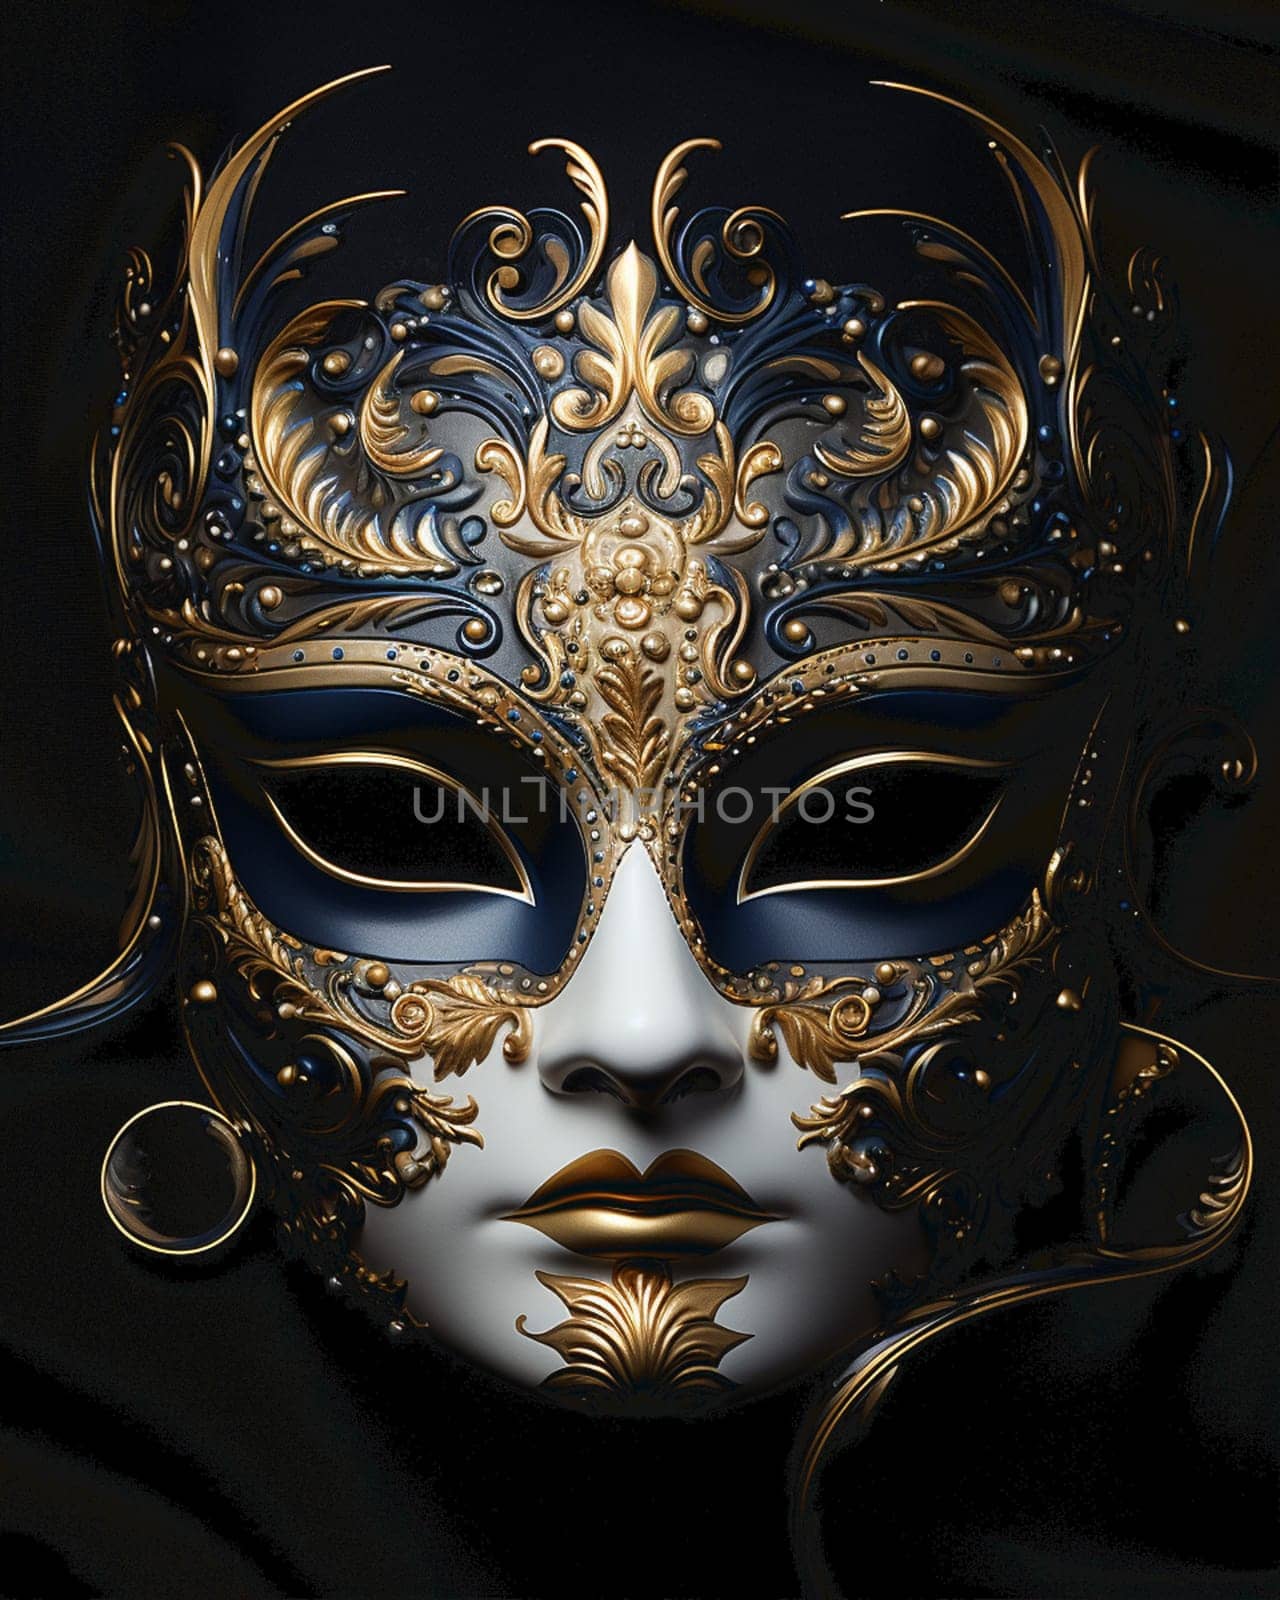 Carnival mask design with golden roses and line plants doodles on black background in 3d illustration by Andelov13